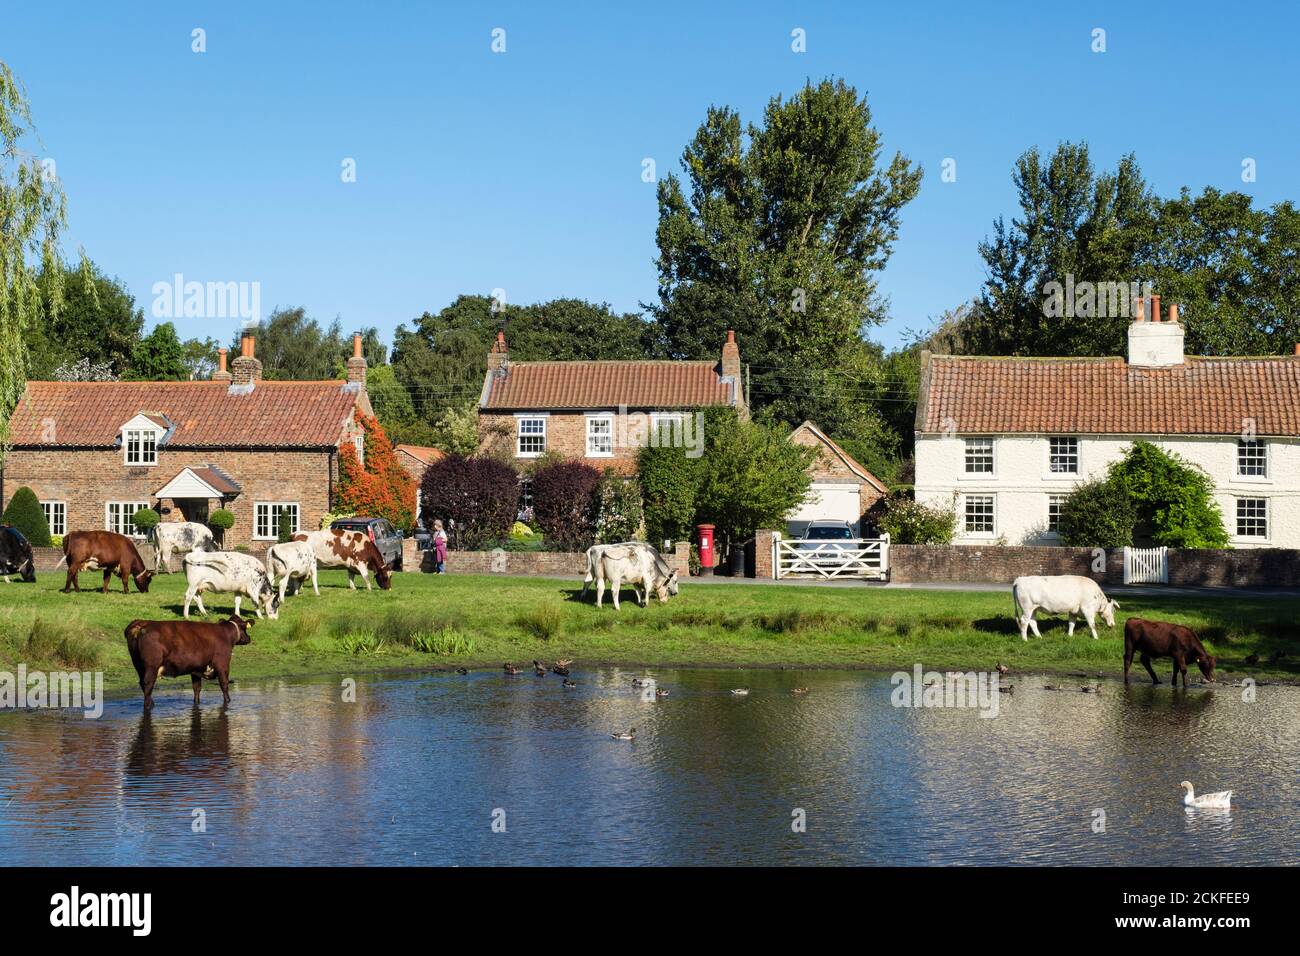 Scena rurale con allevamento di bestiame libero da pascoli da laghetto di anatra su un paese verde villaggio. Nun Monkton, York, North Yorkshire, Inghilterra, Regno Unito, Gran Bretagna Foto Stock